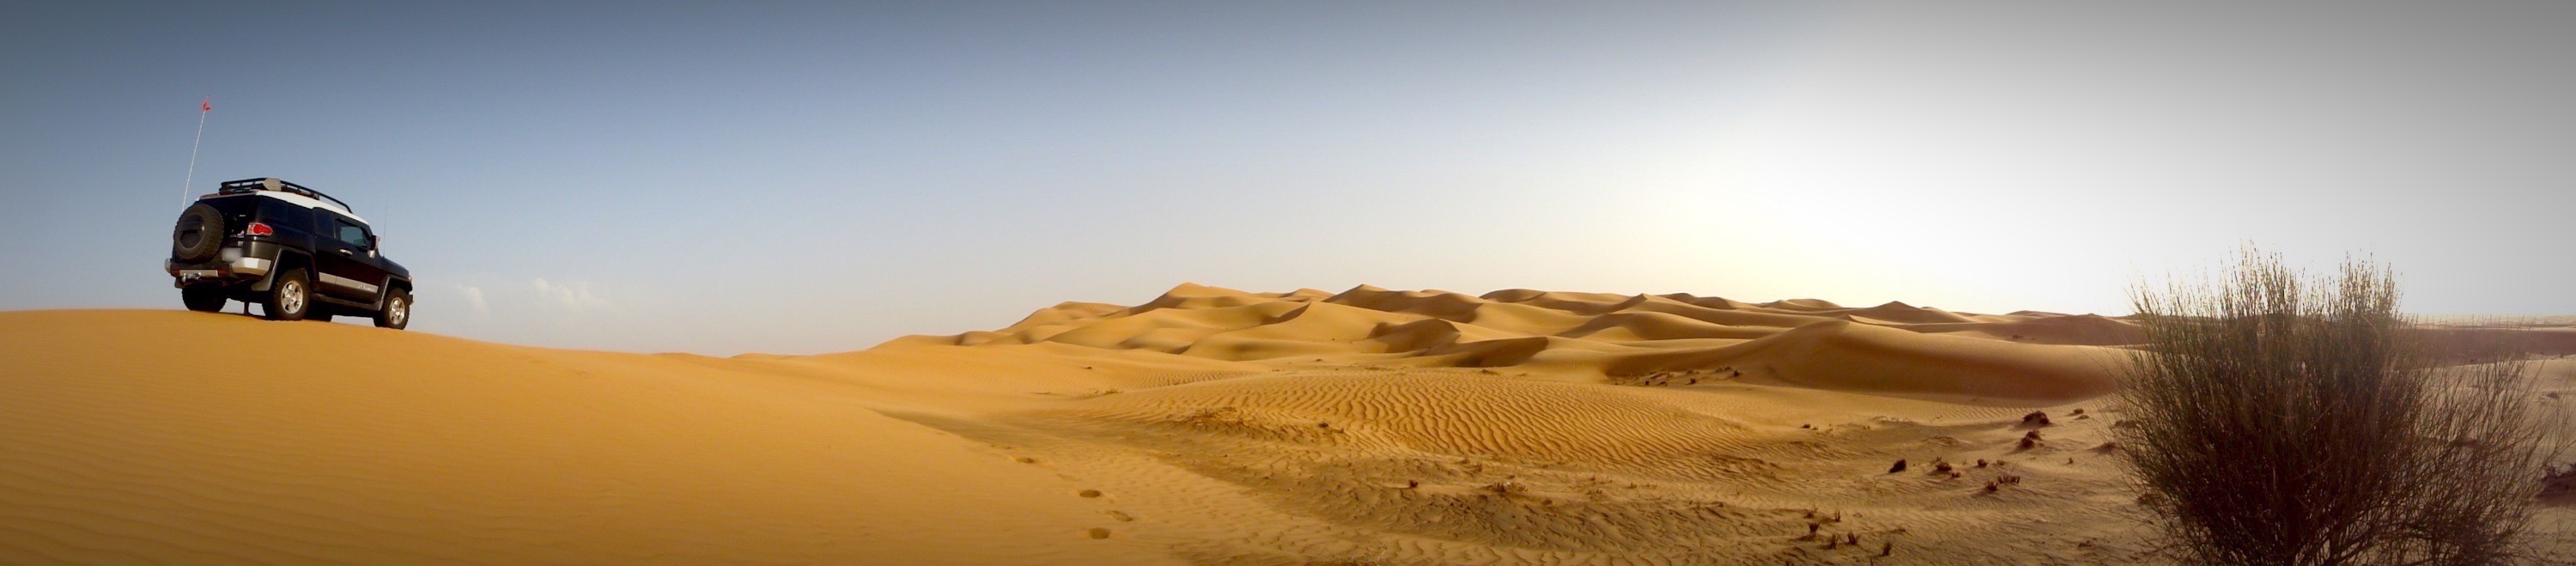 xavier-mongin-FJ-dunes-panoramique